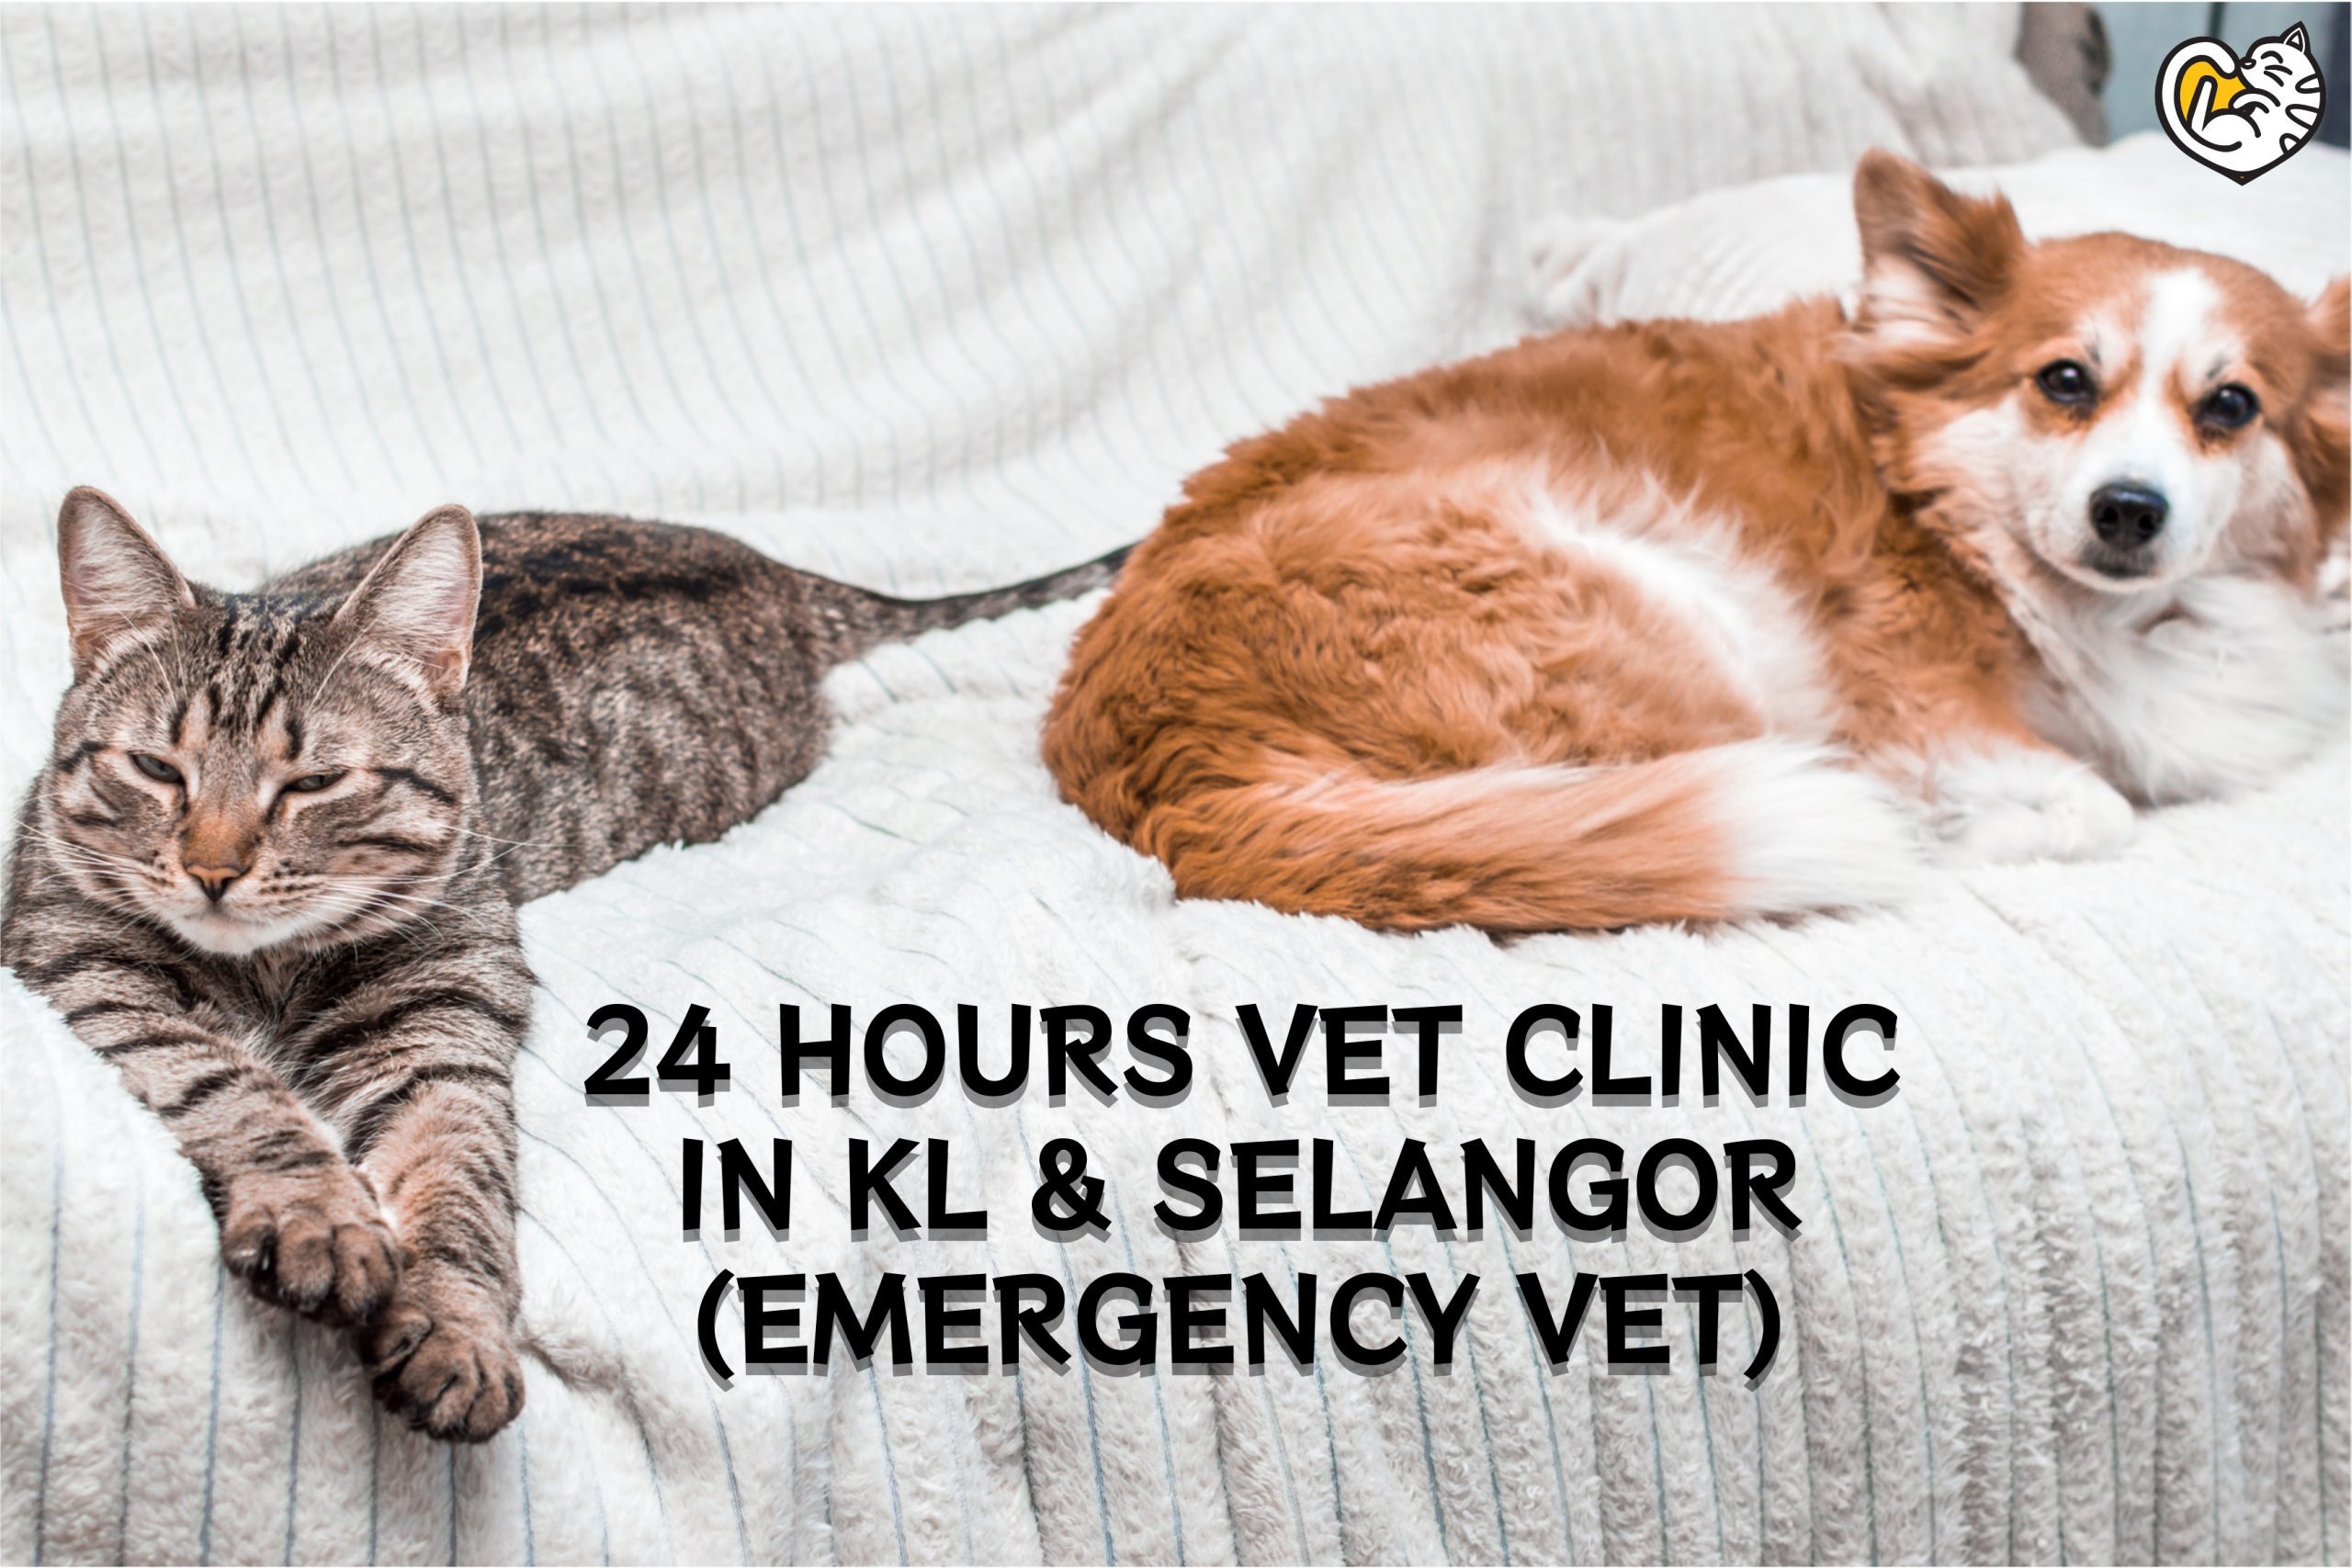 24 Hours Vet Clinic in KL & Selangor (Includes Emergency Vet)